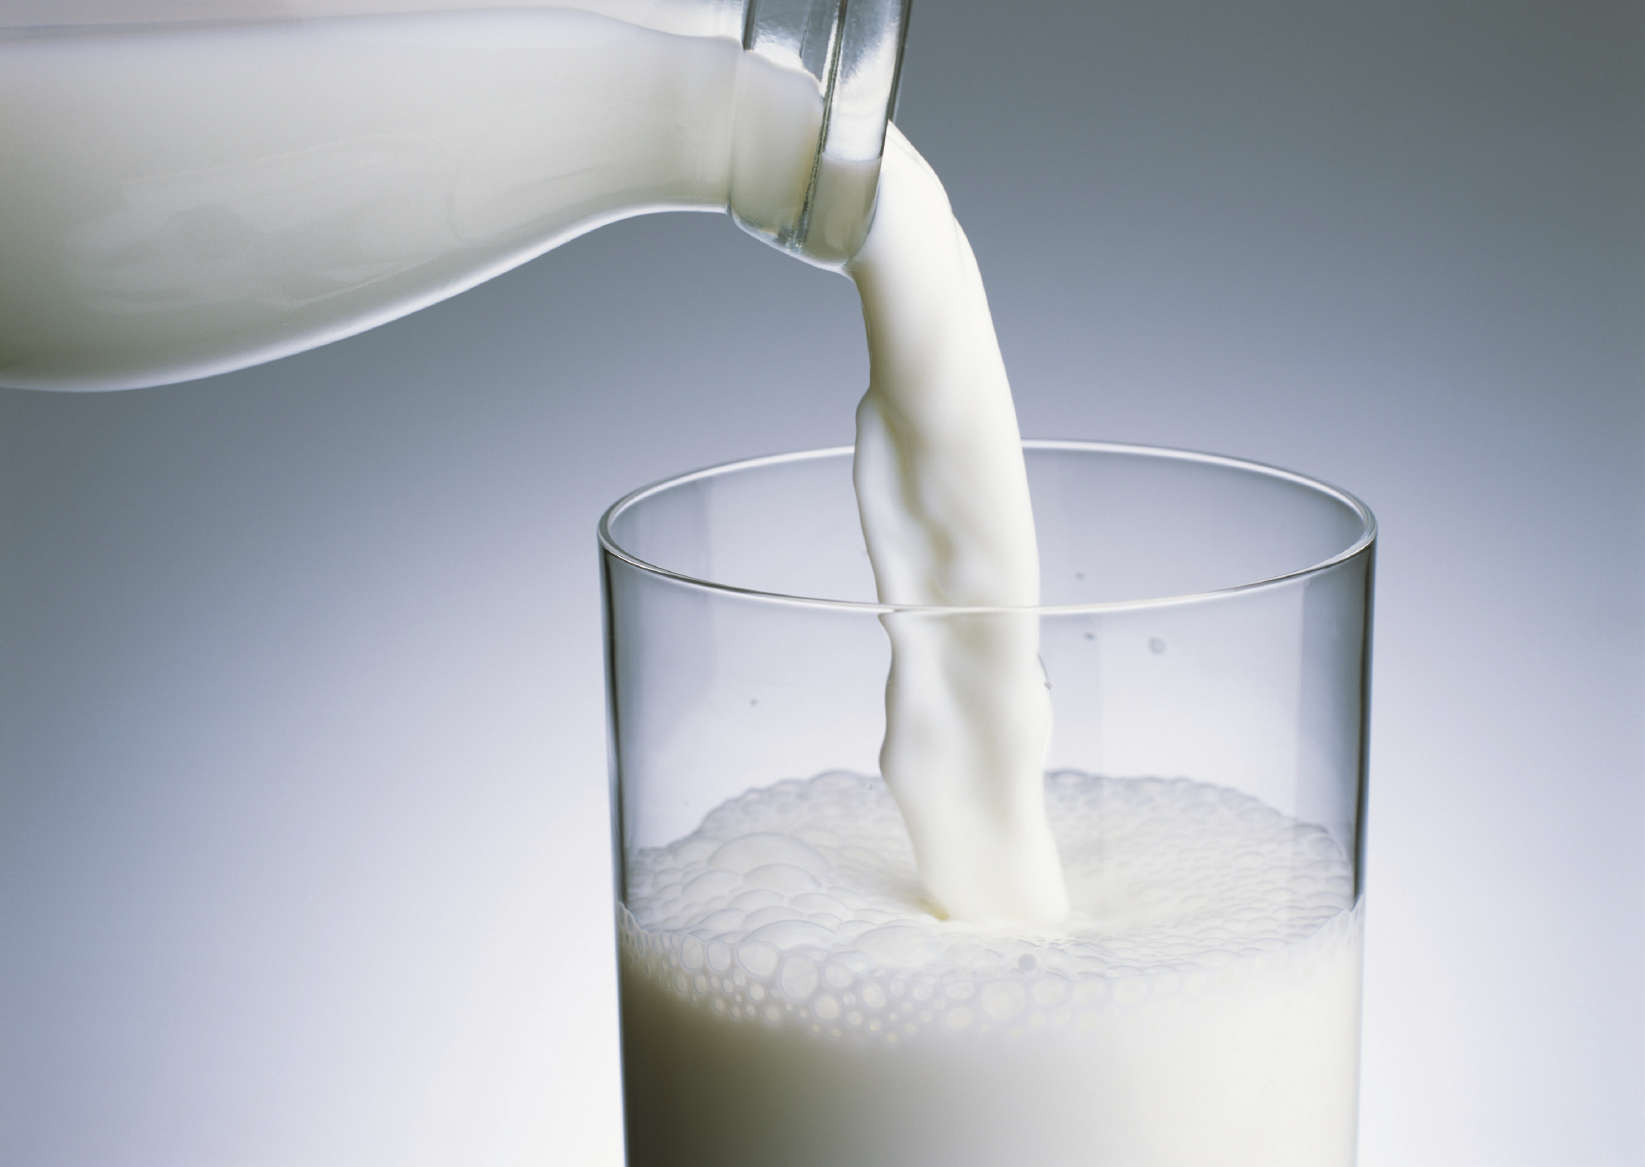 दूध प्रोटीन मुँहासे का कारण बनता है